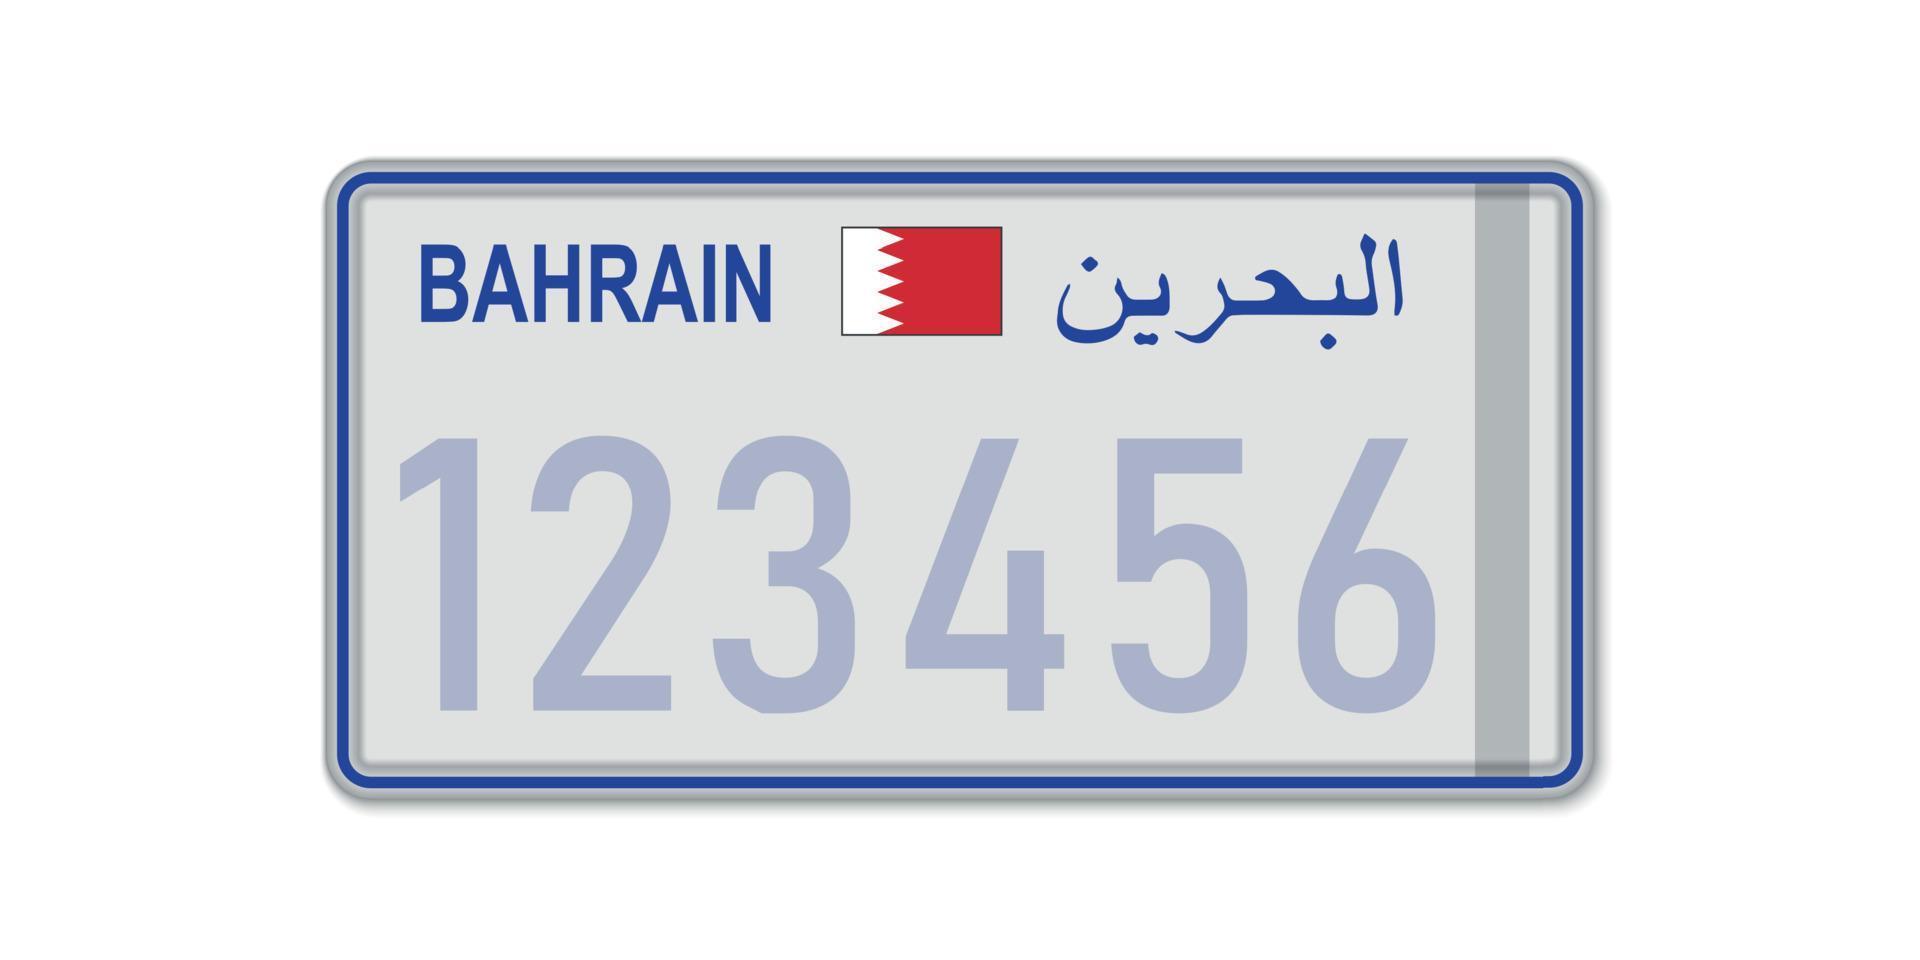 placa de carro. licença de registro de veículo do bahrein. com vetor